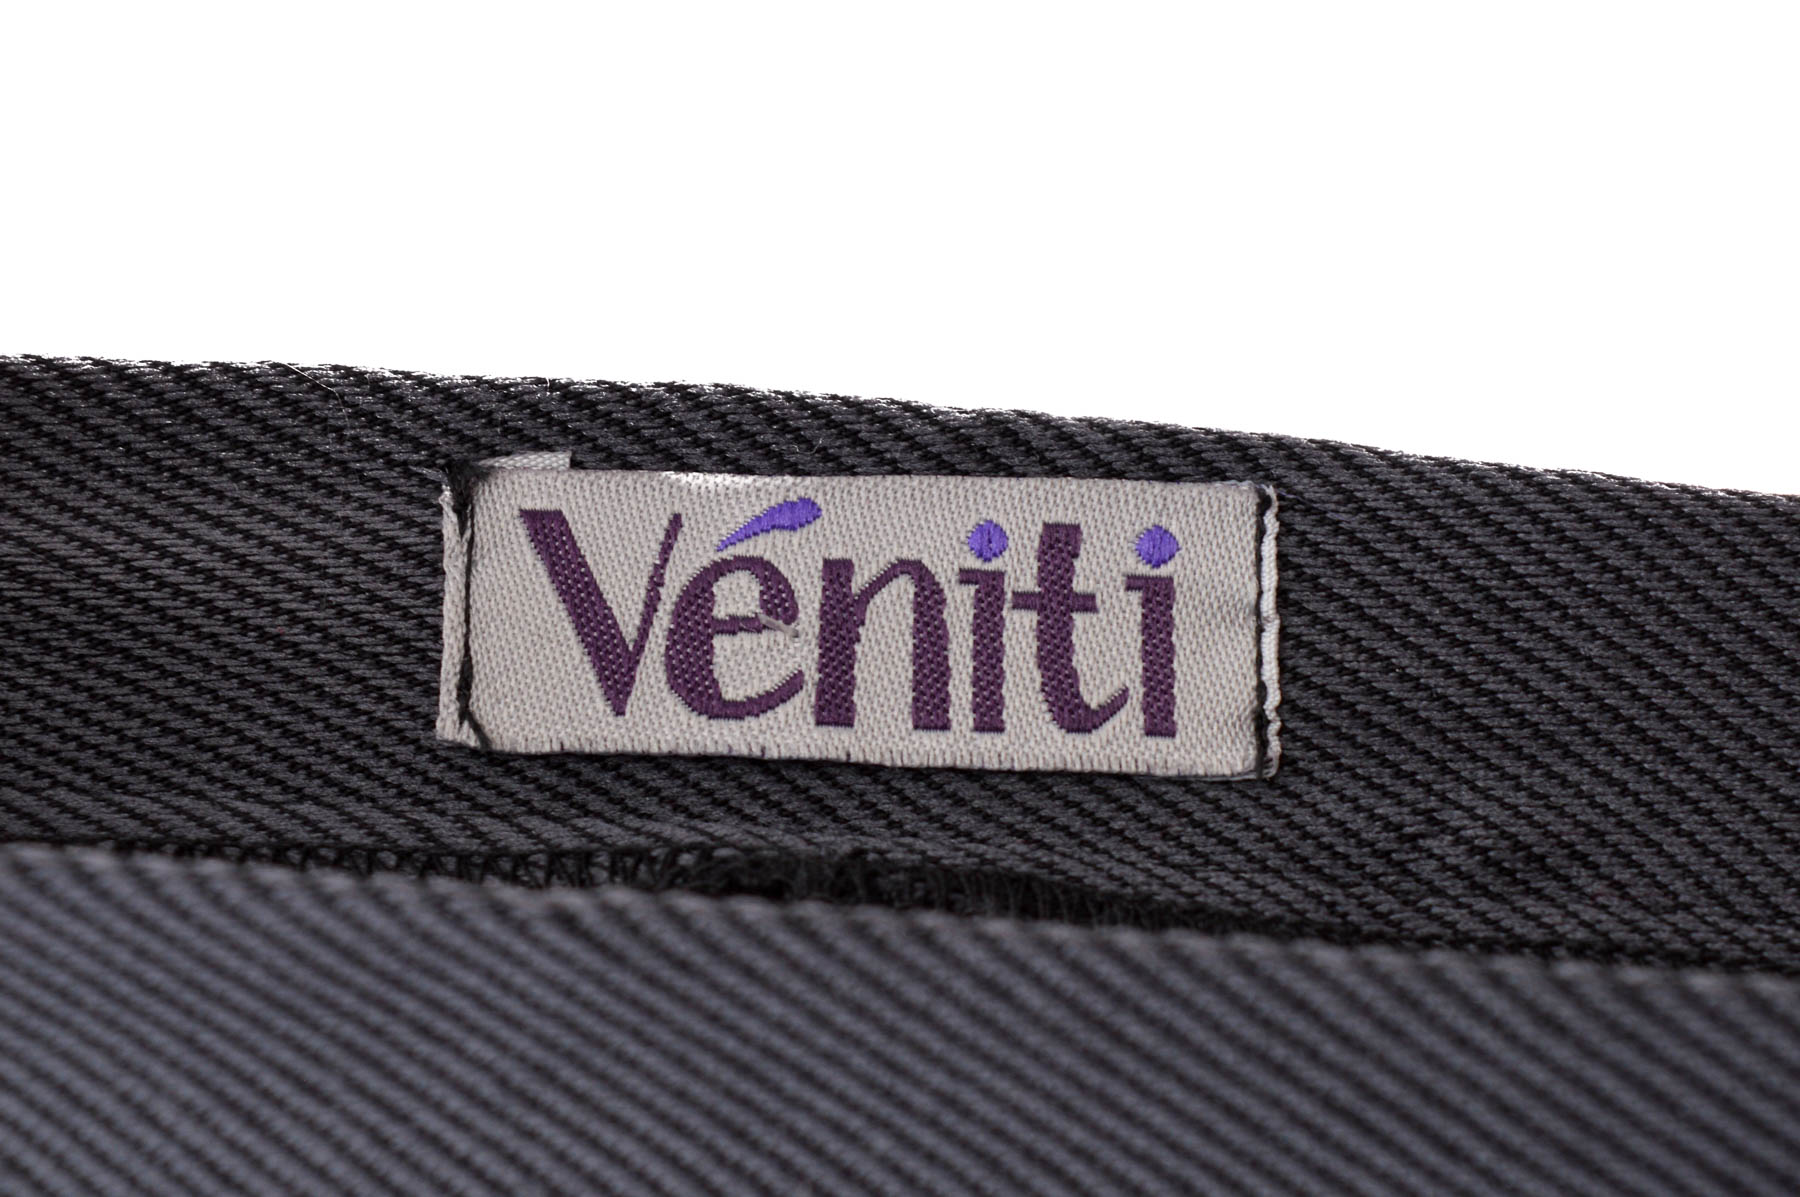 Spodnie dla dziewczynek - Veniti - 2